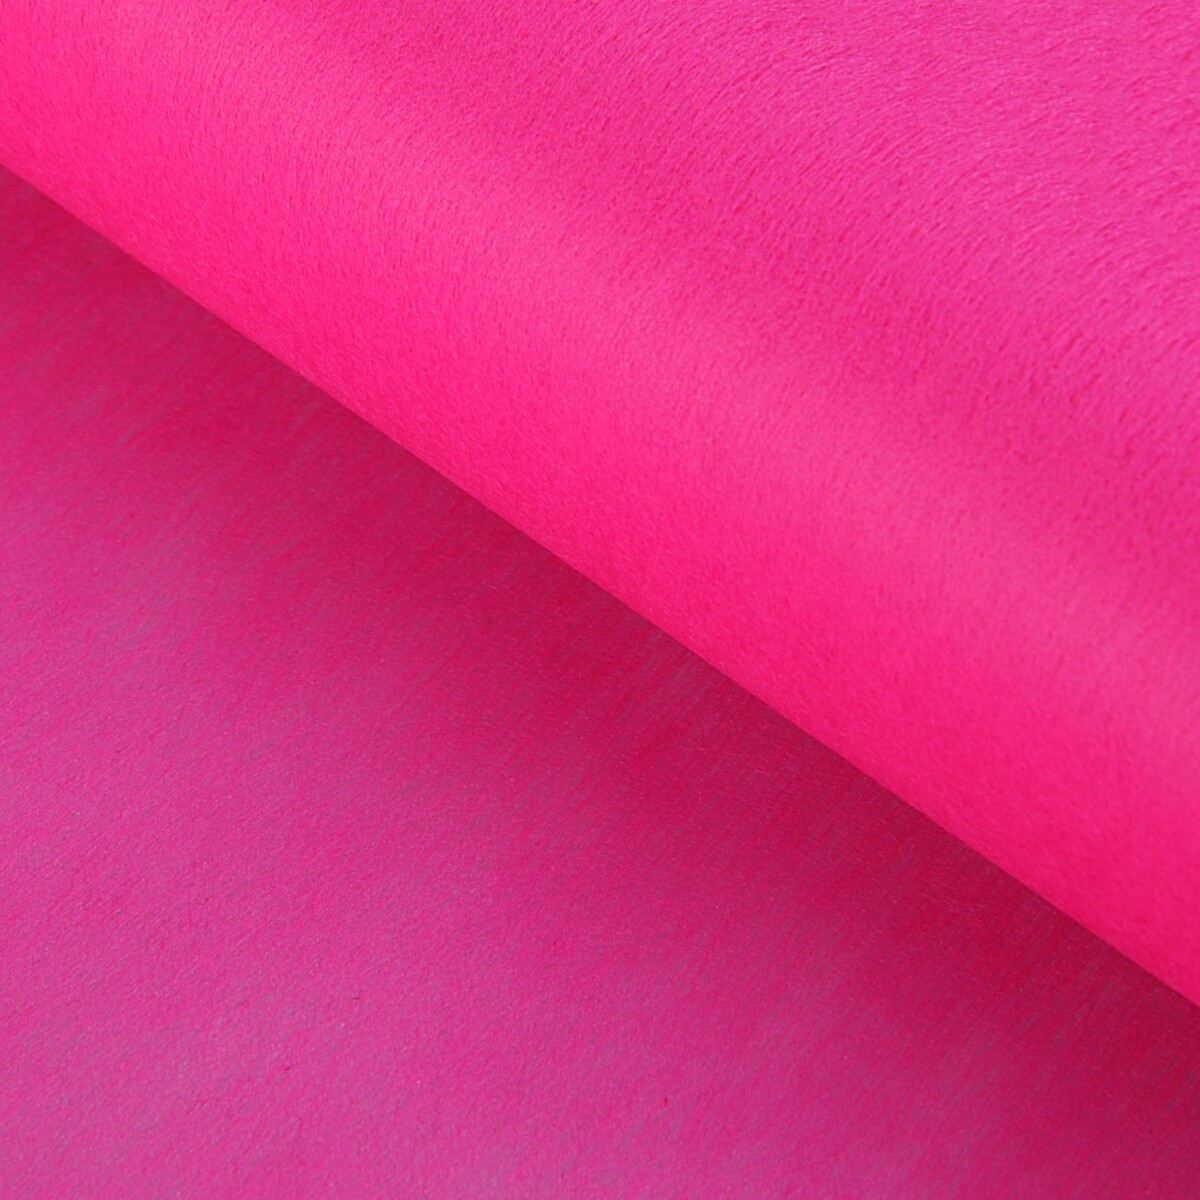 Фетр для упаковок и поделок, однотонный, ярко-розовый, однотонный, двусторонний, рулон 1шт., 50 см x 15 м фетр для упаковок и поделок однотонный салатовый зеленый двусторонний рулон 1шт 0 5 x 20 м